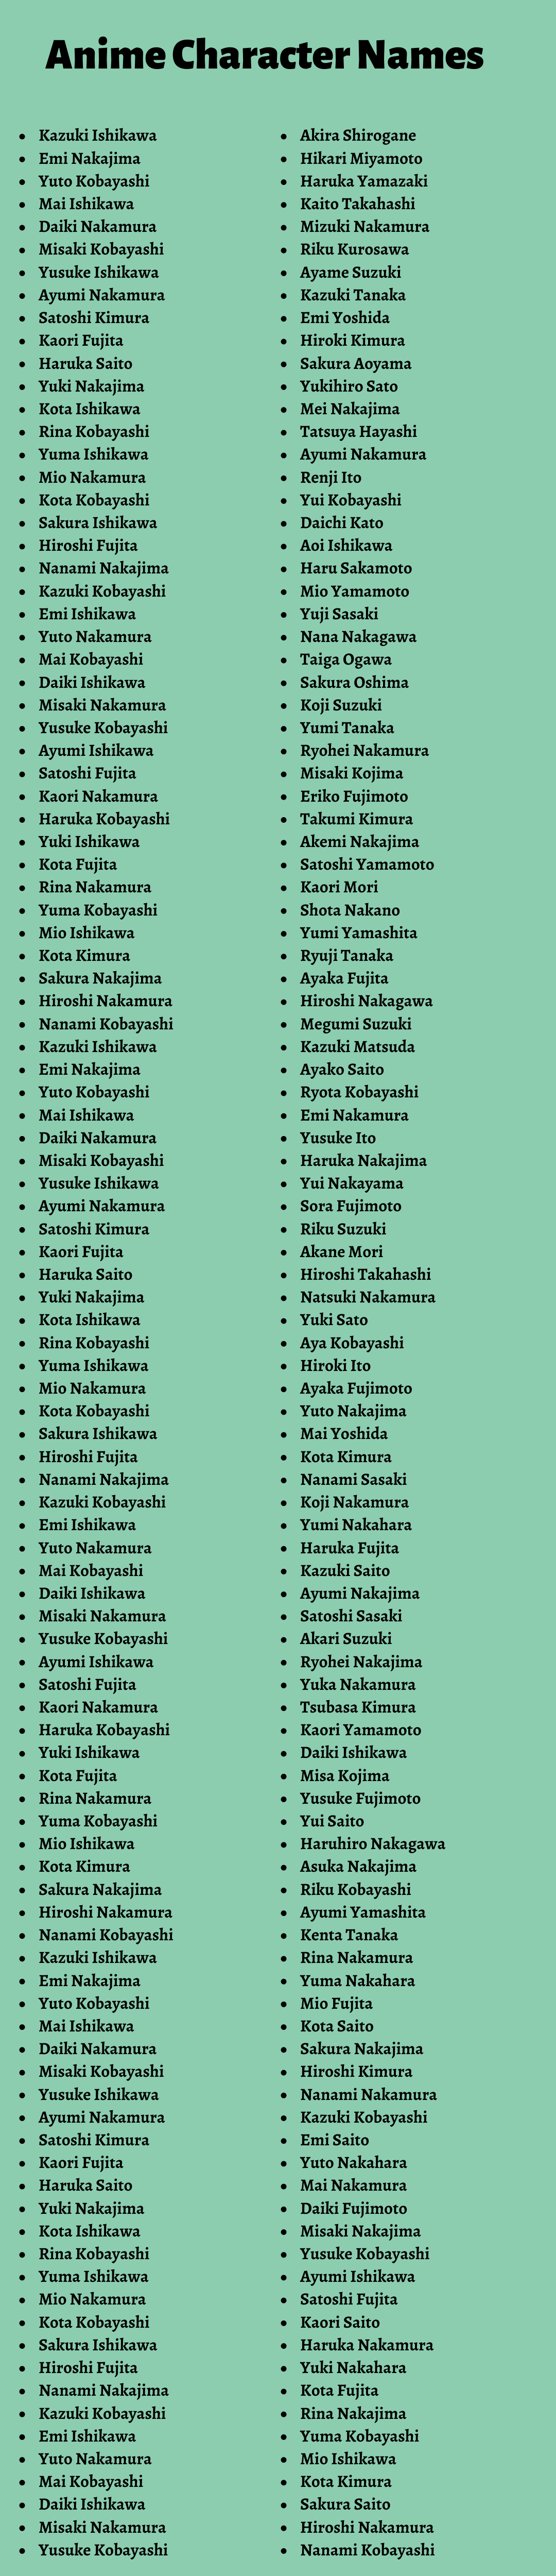 Anime Character Names